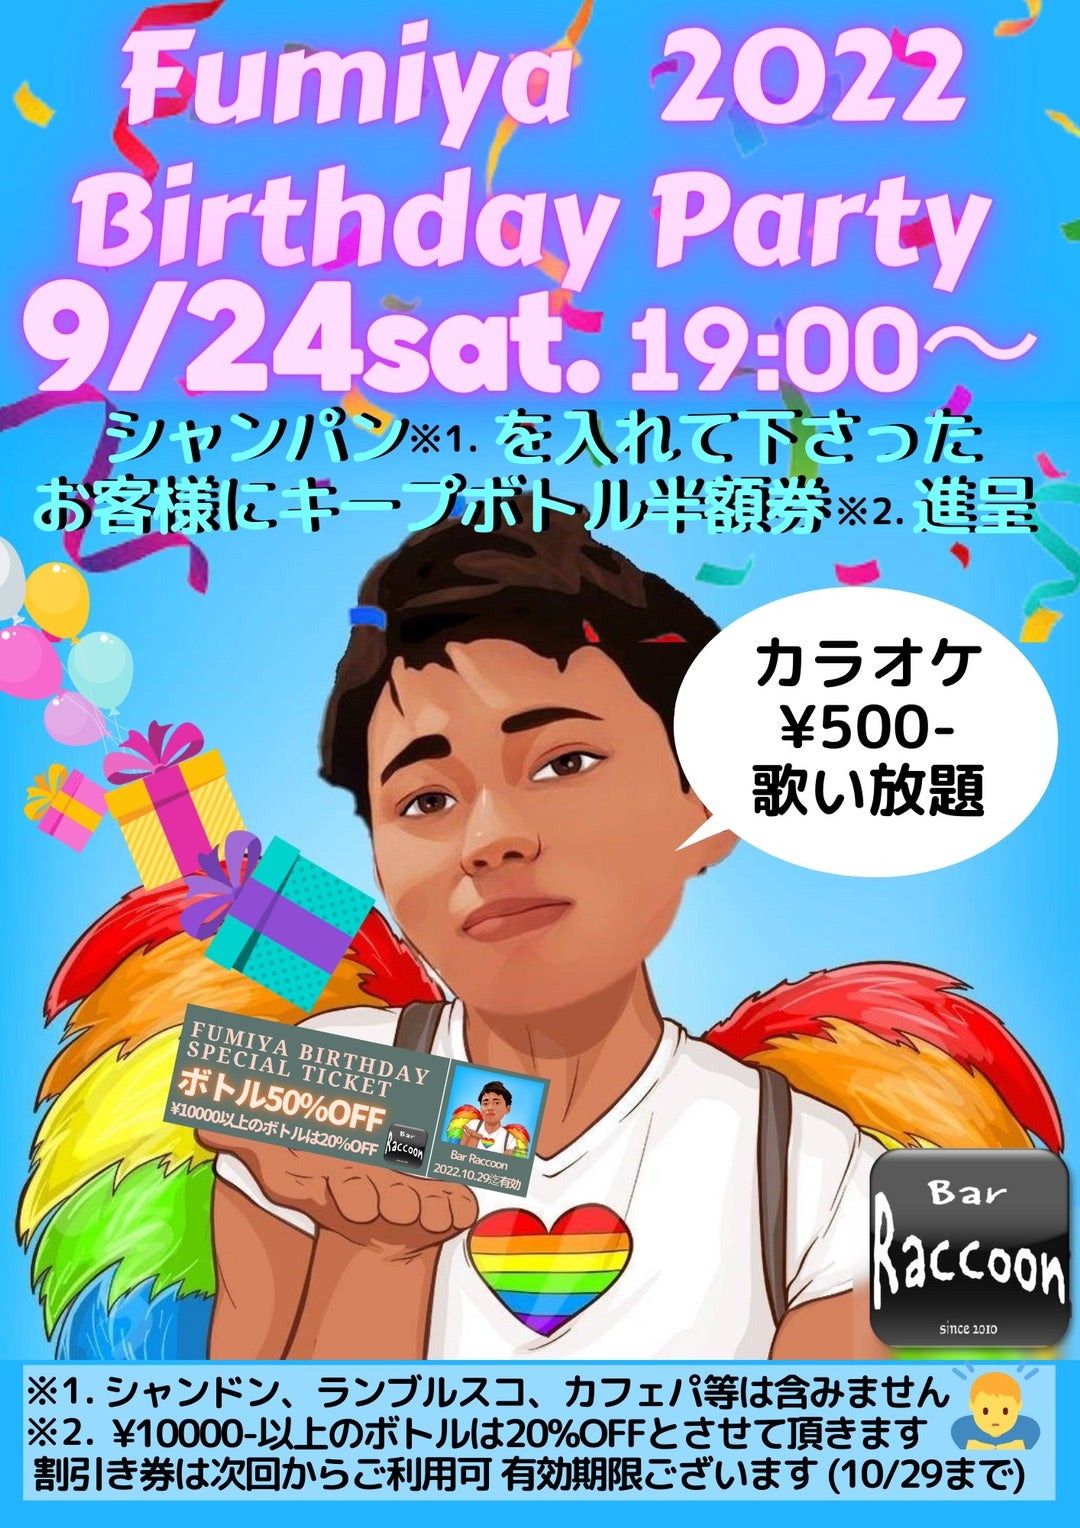 9月24日(土) Fumiya Birthday Party【Raccoonのブログ】